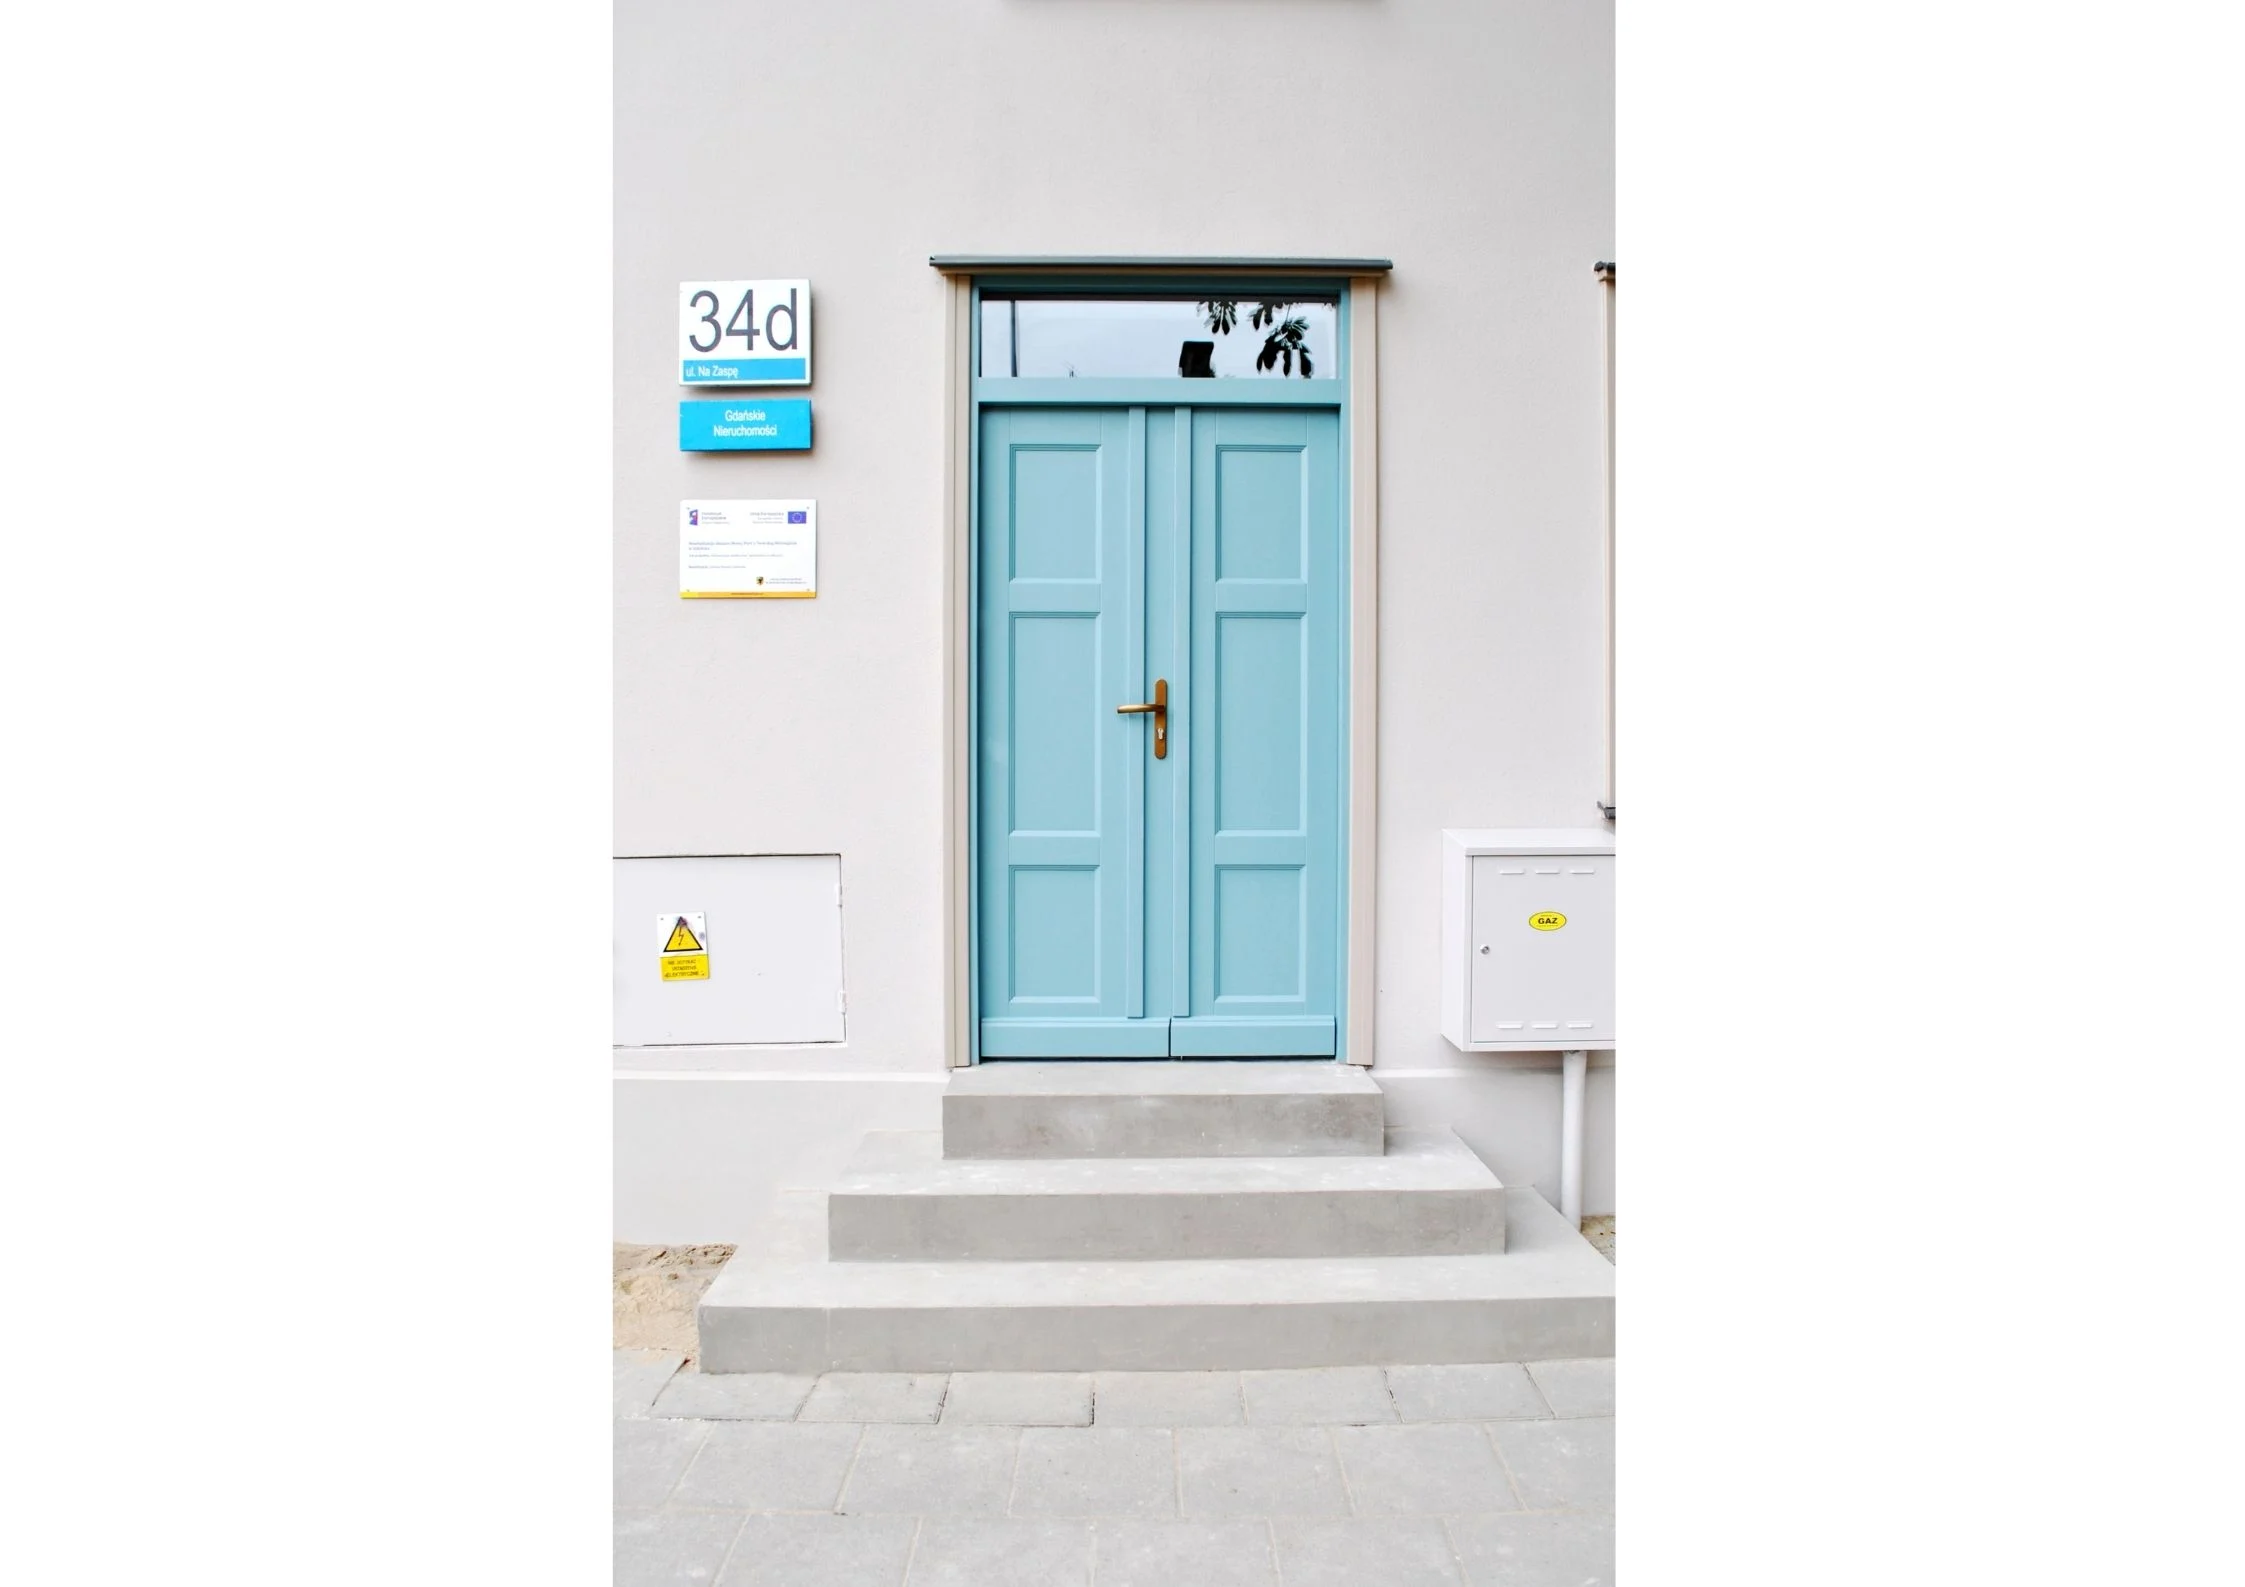 Widok wyremontowanego wejścia do budynku z drewnianą stolarką drzwiową w kolorze turkusowym.